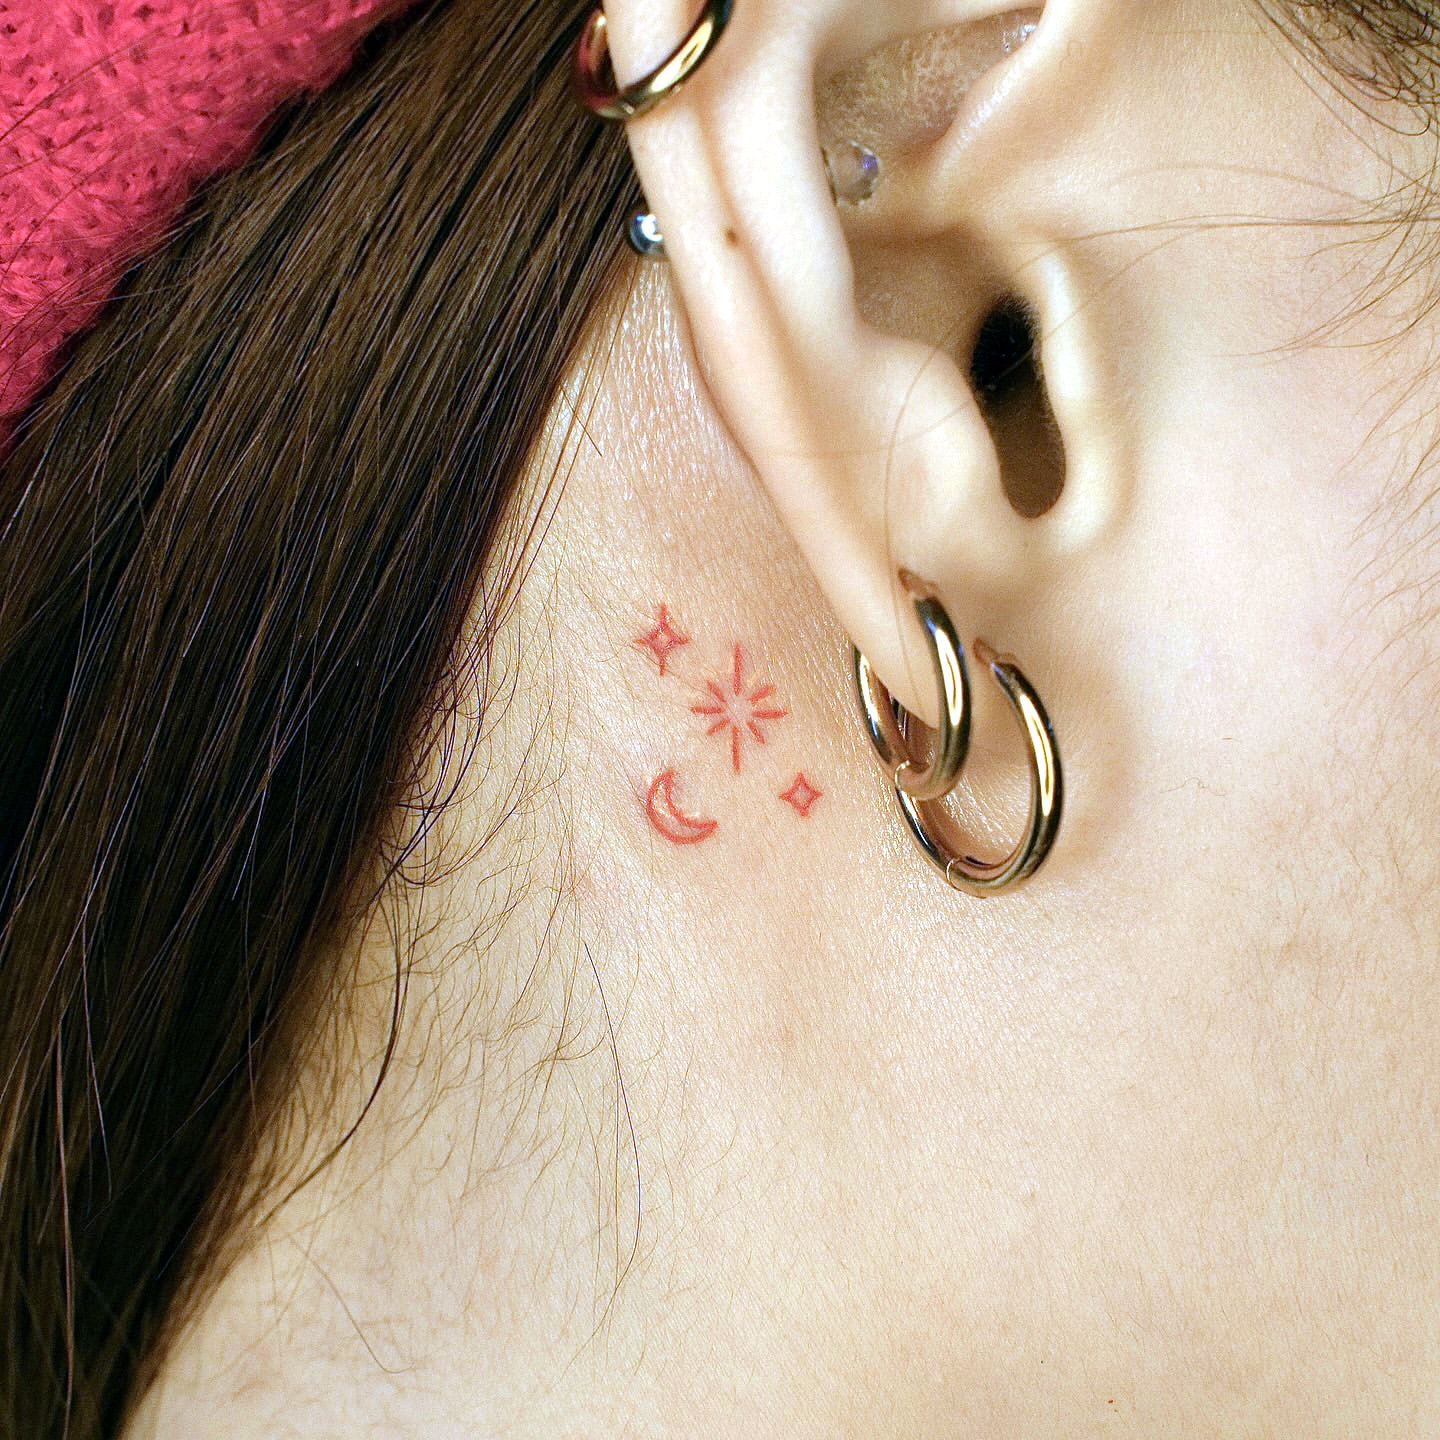 tiny ear tattoo